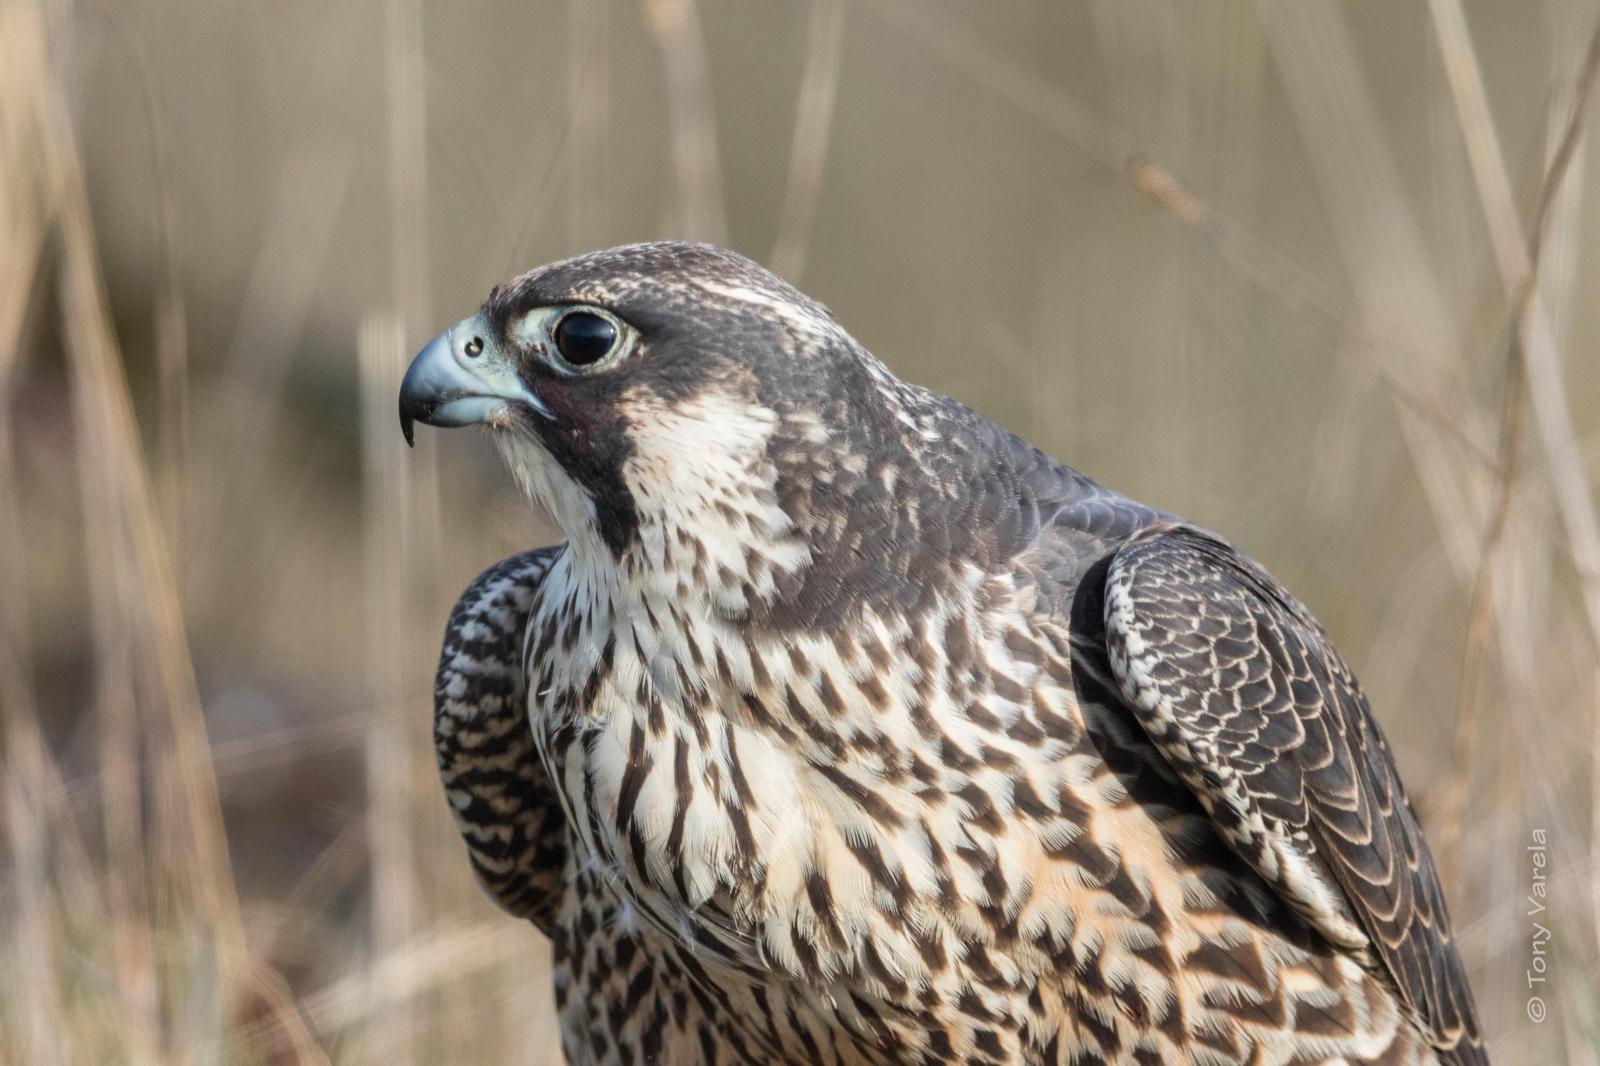 Peregrine Falcon Photo by Tony Varela